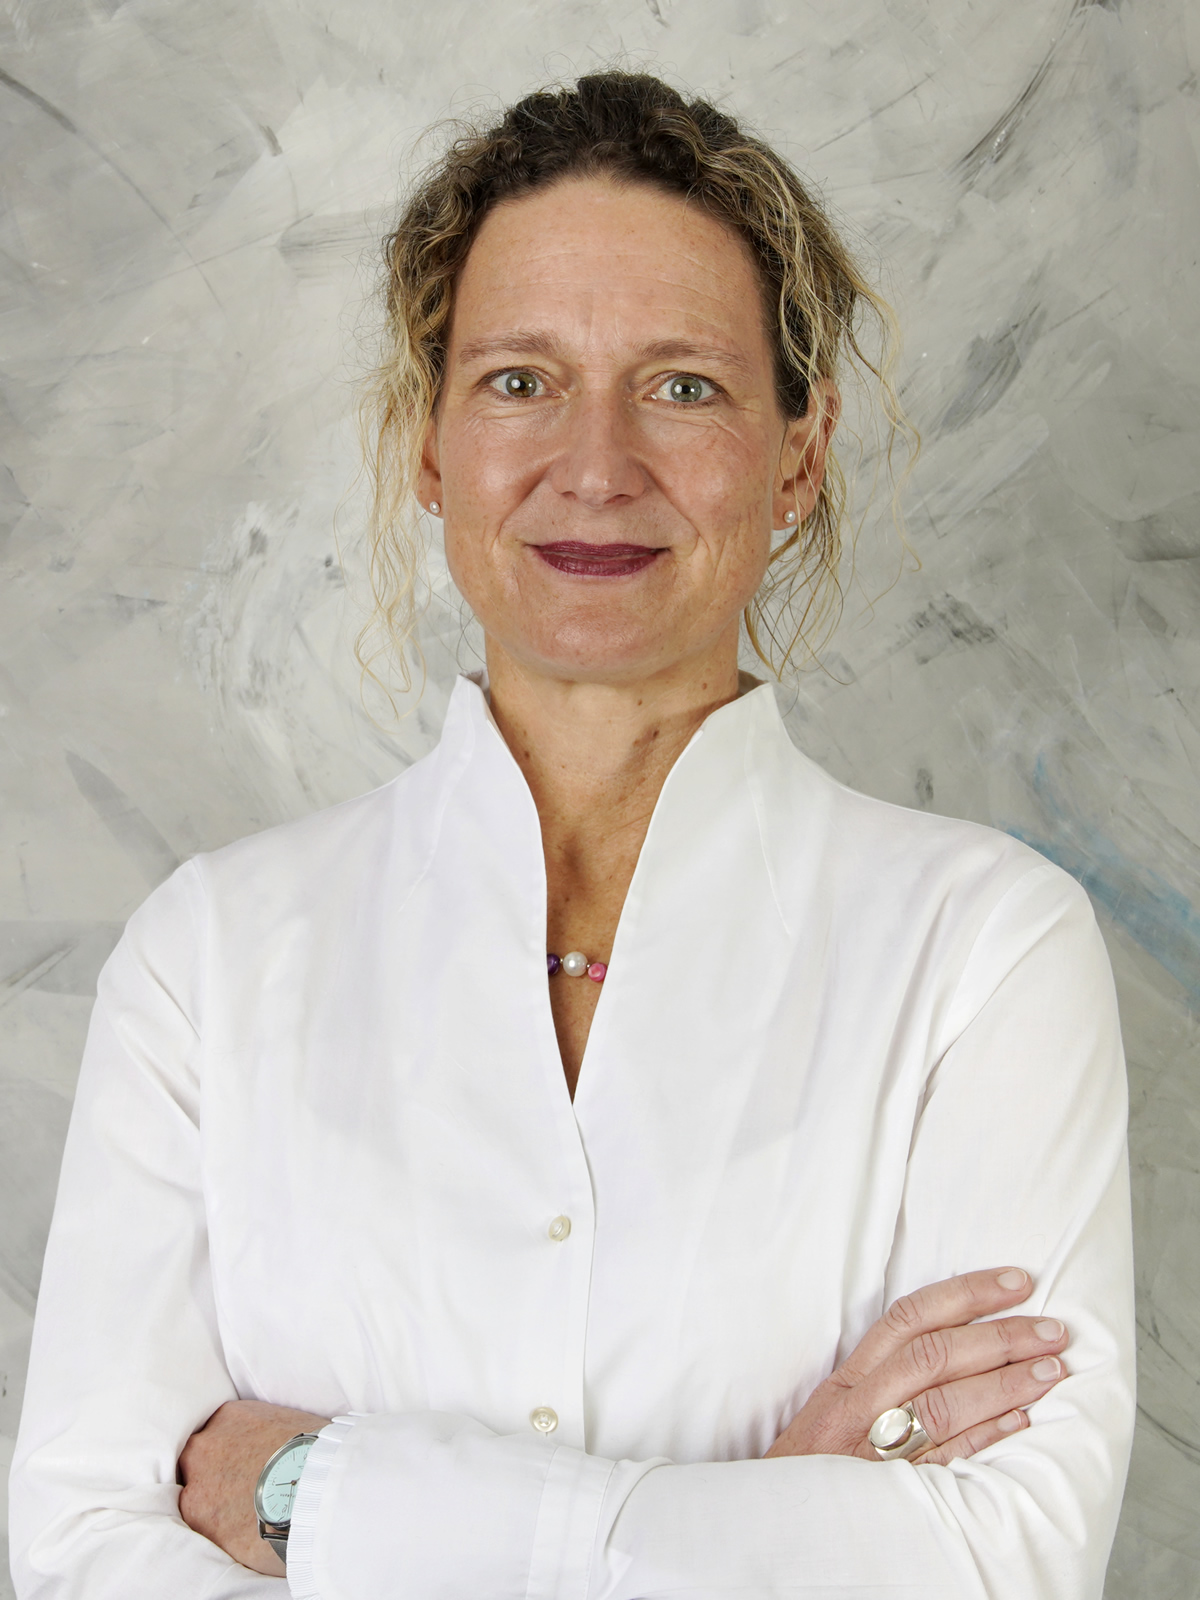 Rechtsanwältin Anja Voigt, geb. Anja-Kristina Wiese, ist Fachanwältin für Arbeitsrecht und ausgebildete Mediatorin